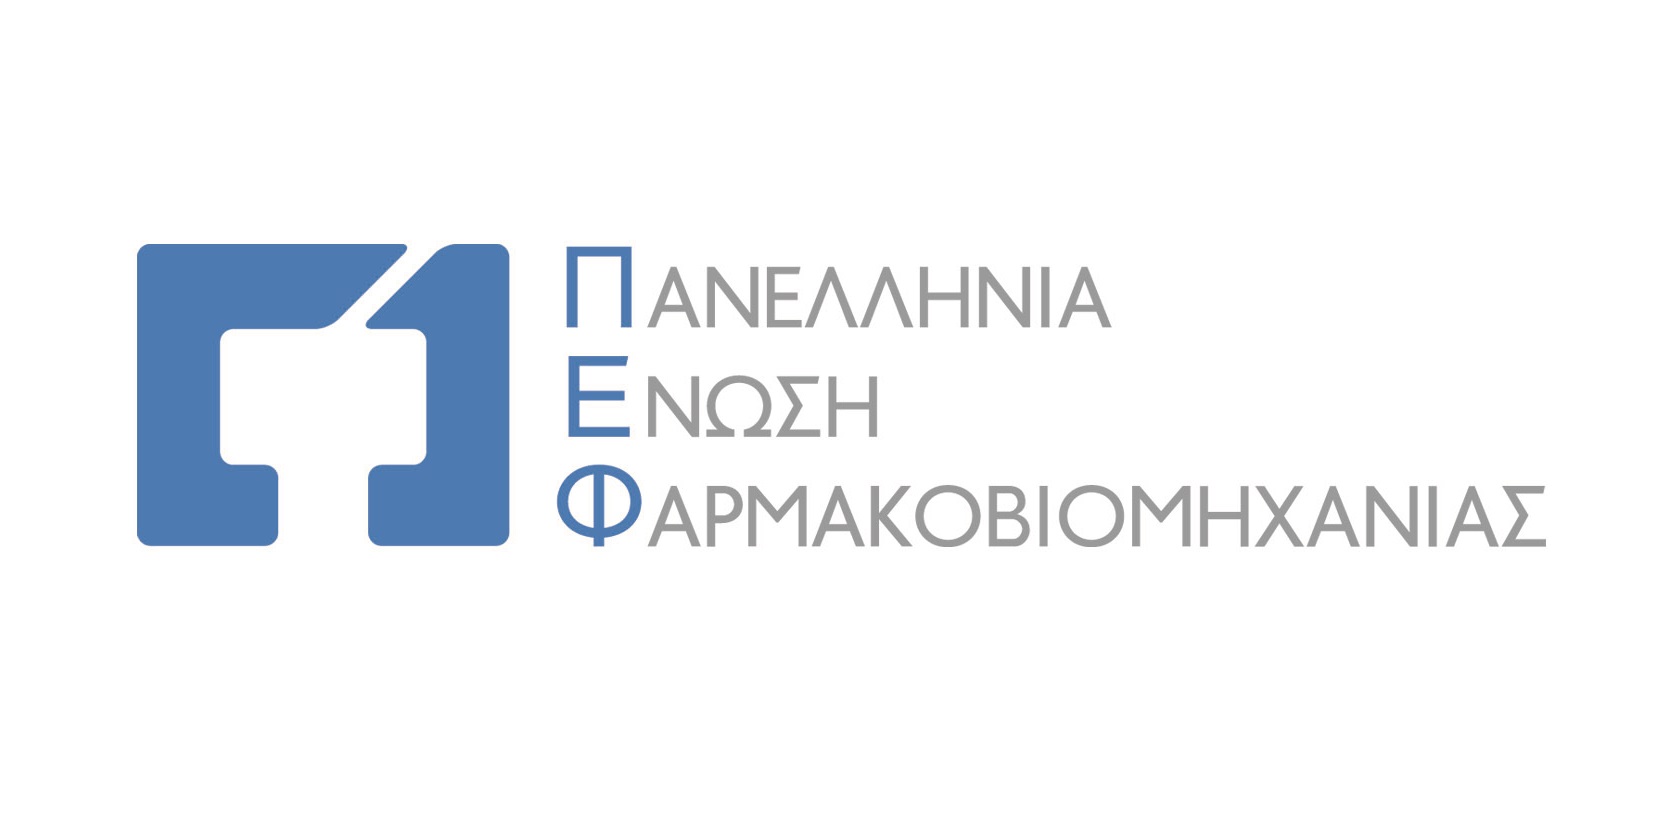 38 ελληνικές εταιρίες στην CPhI Worldwide 2022, την κορυφαία διεθνή διοργάνωση στον κλάδο του φαρμάκου